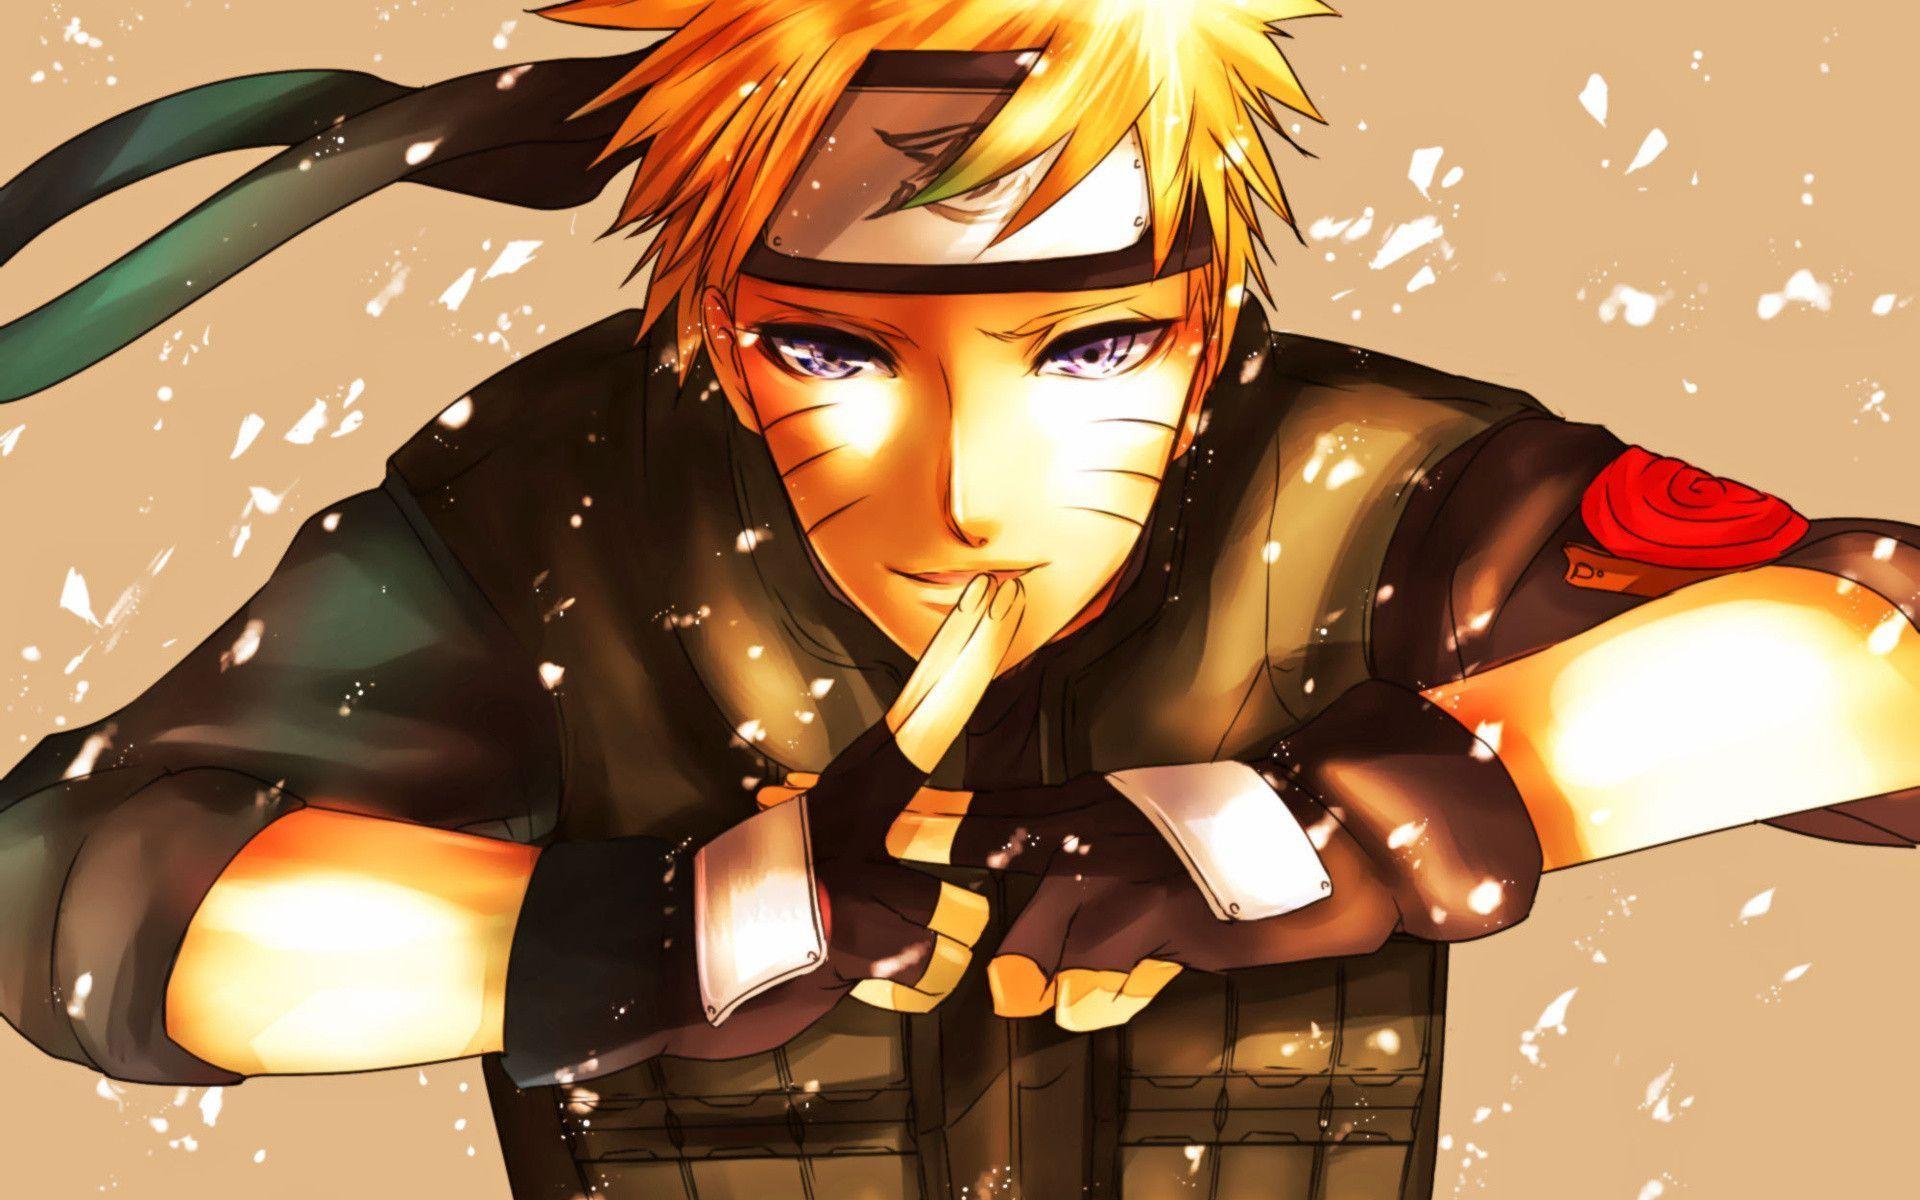 Thưởng thức hình nền Naruto đáng yêu sẽ khiến bạn cảm thấy tươi mới và đầy năng lượng. Hình ảnh Naruto với nụ cười tươi cùng với các nhân vật khác trên nền hình nền đáng yêu này sẽ thực sự làm lòng bạn thư giãn sau một ngày dài lao động.